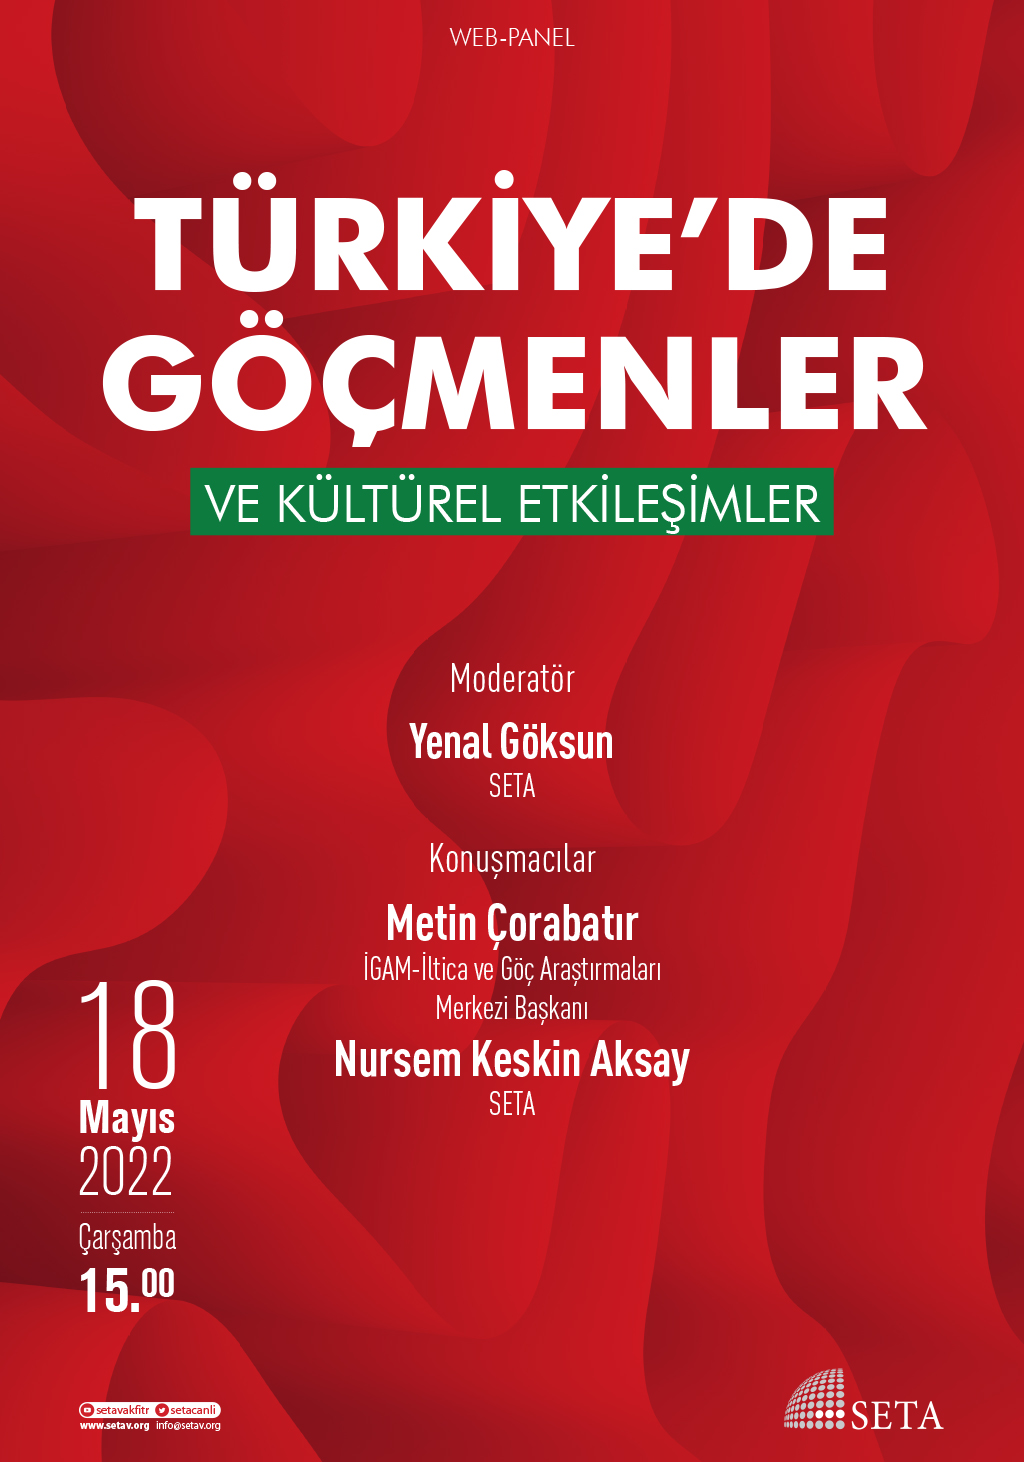 Web Panel: Türkiye’de Göçmenler ve Kültürel Etkileşimler